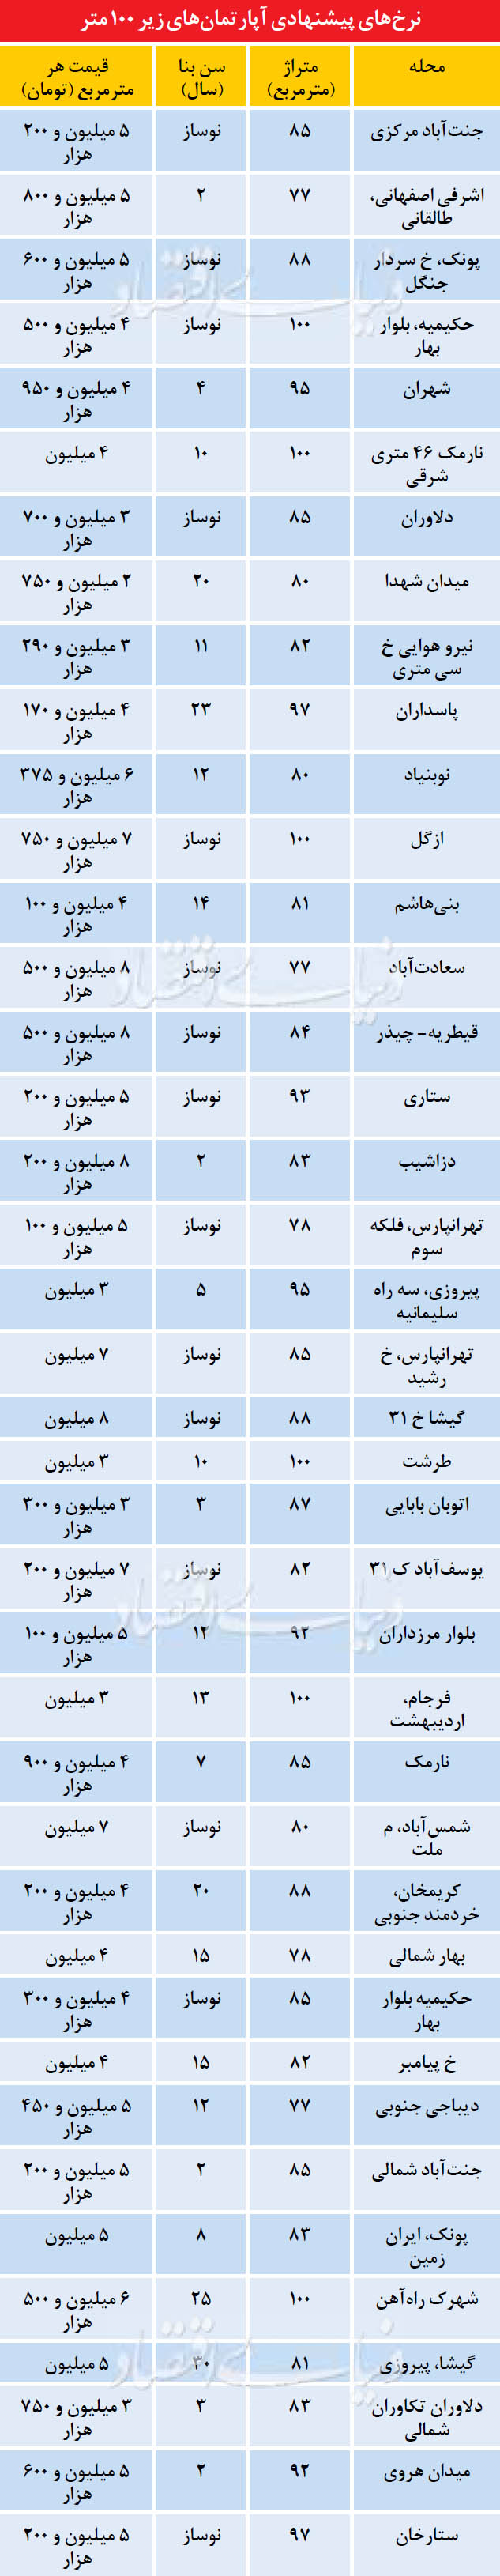 قیمت آپارتمان های زیر 100 متر در تهران (جدول)